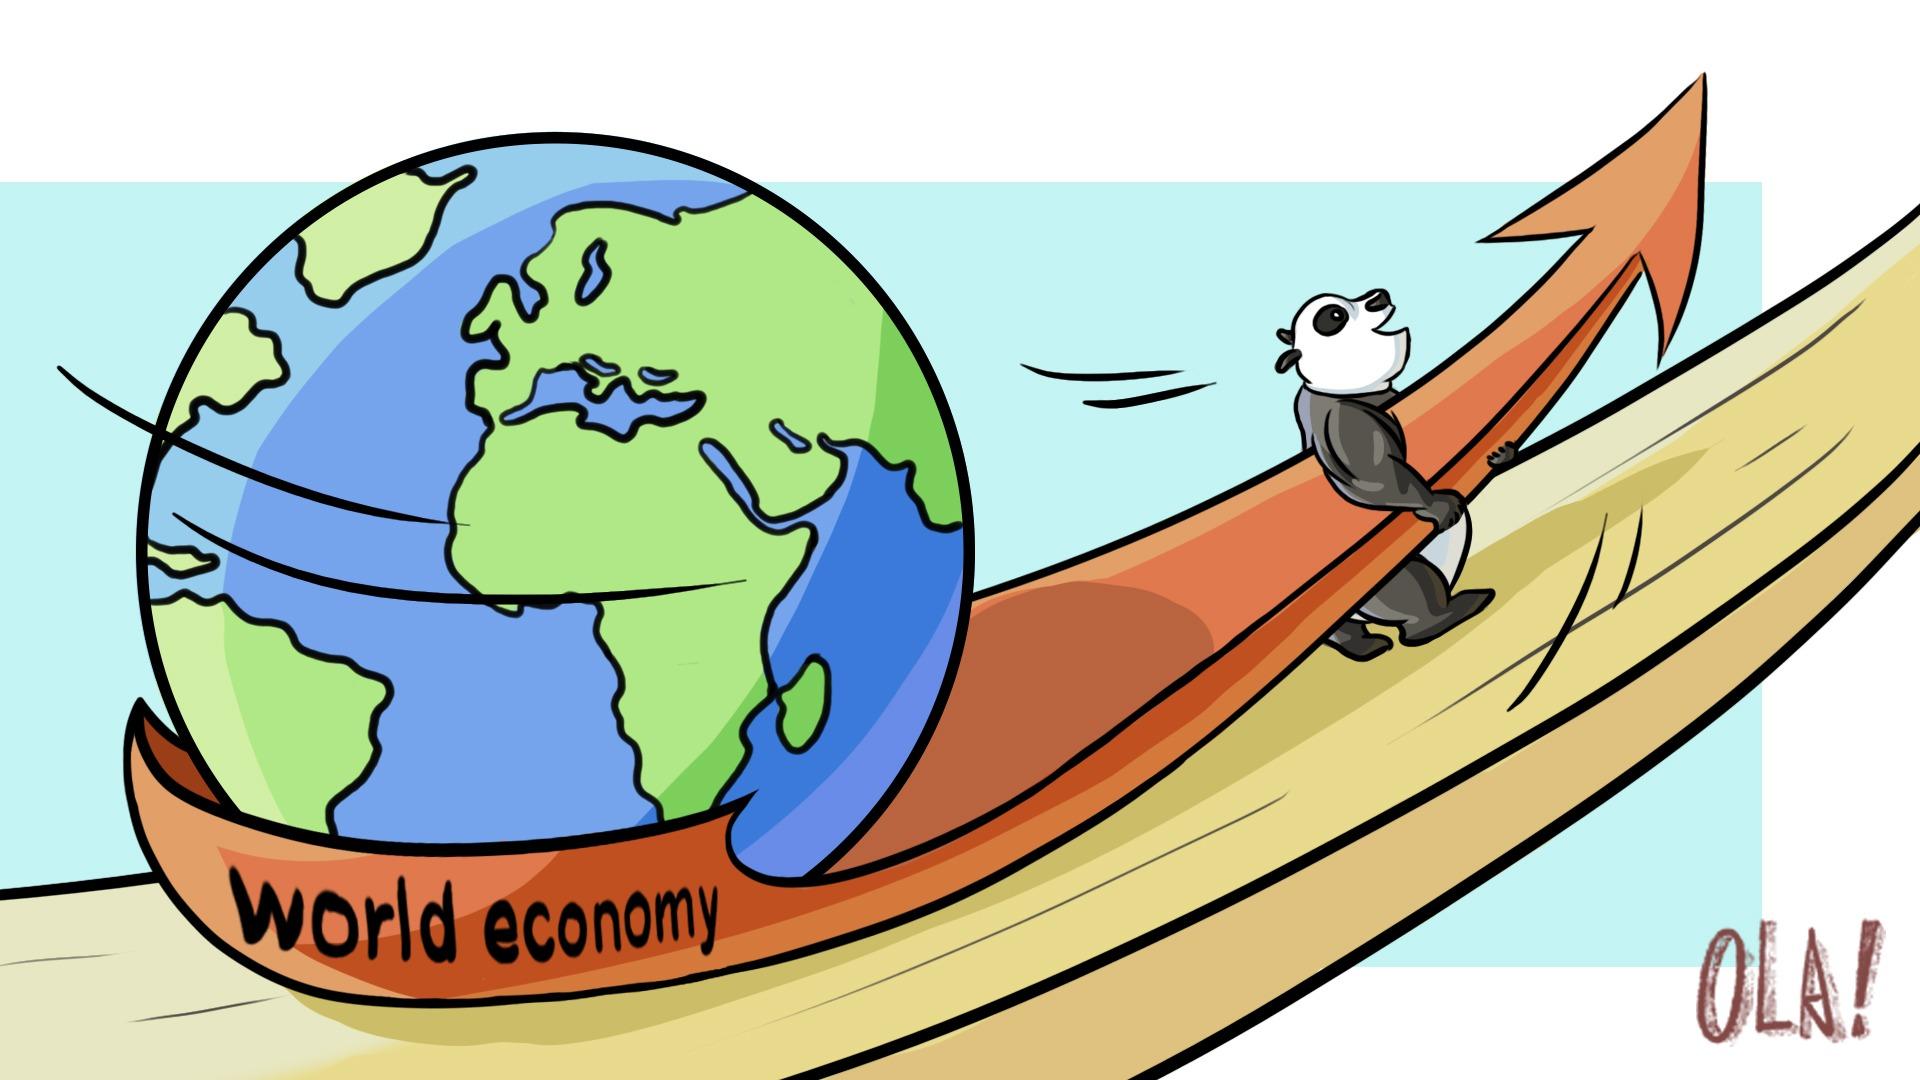 Хятад улс дэлхийн эдийн засгийн хөдөлгөгч хүч хэвээр байна